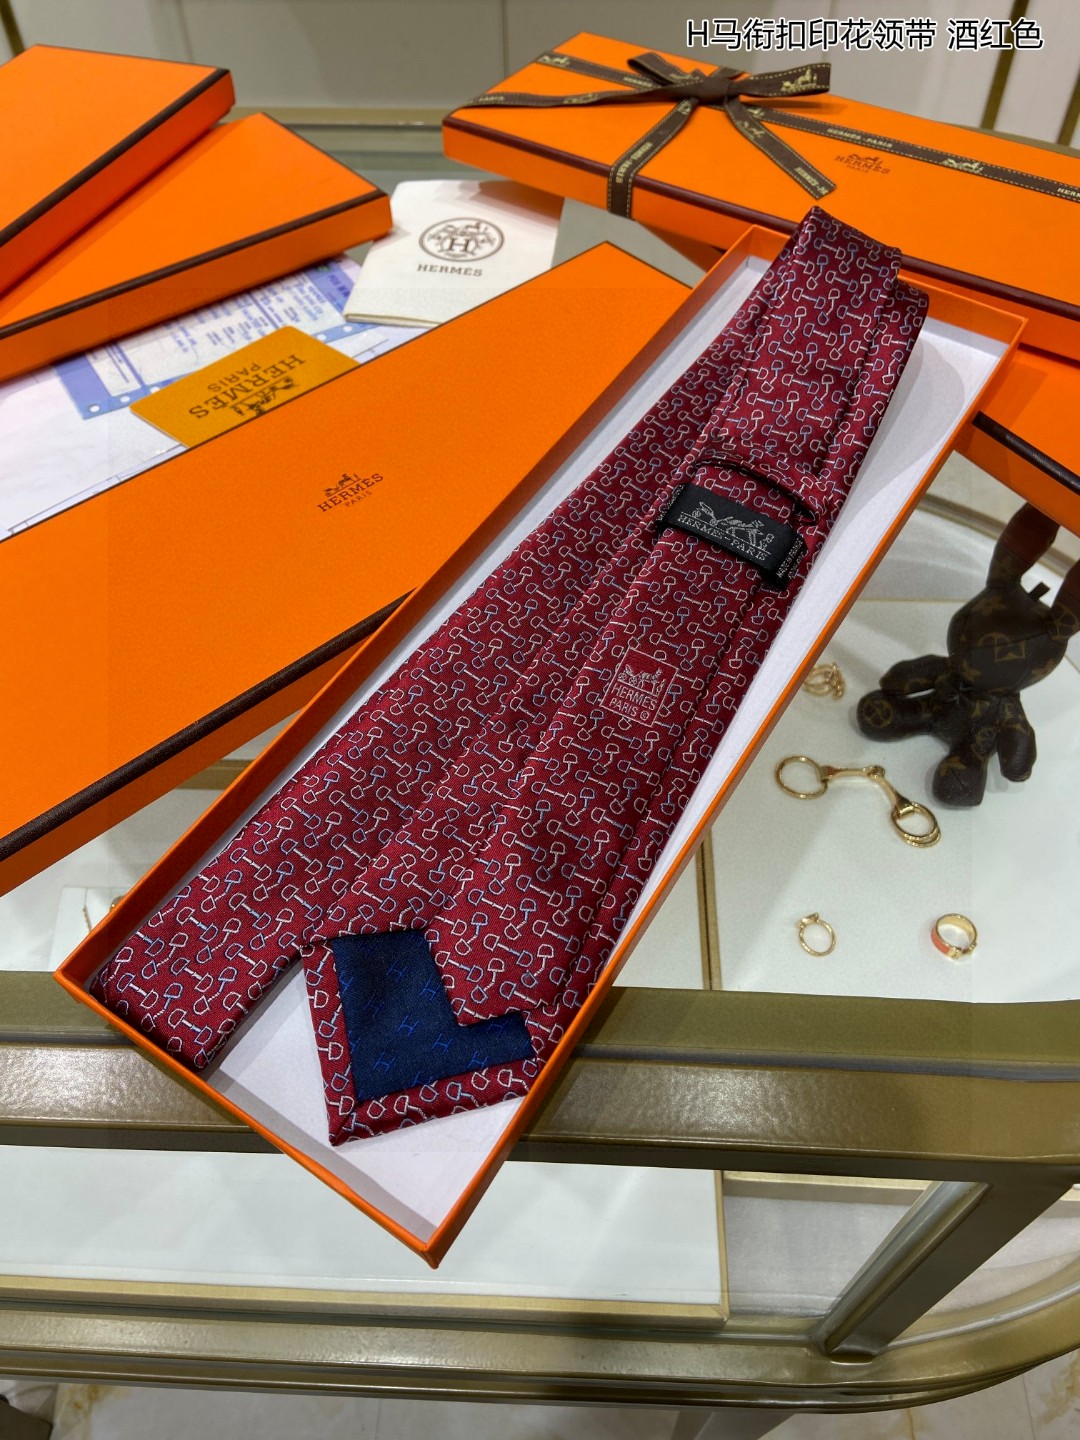 特价男士新款领带系列H马衔扣印花领带稀有H家每年都有一千条不同印花的领带面世从最初的多以几何图案表现骑术